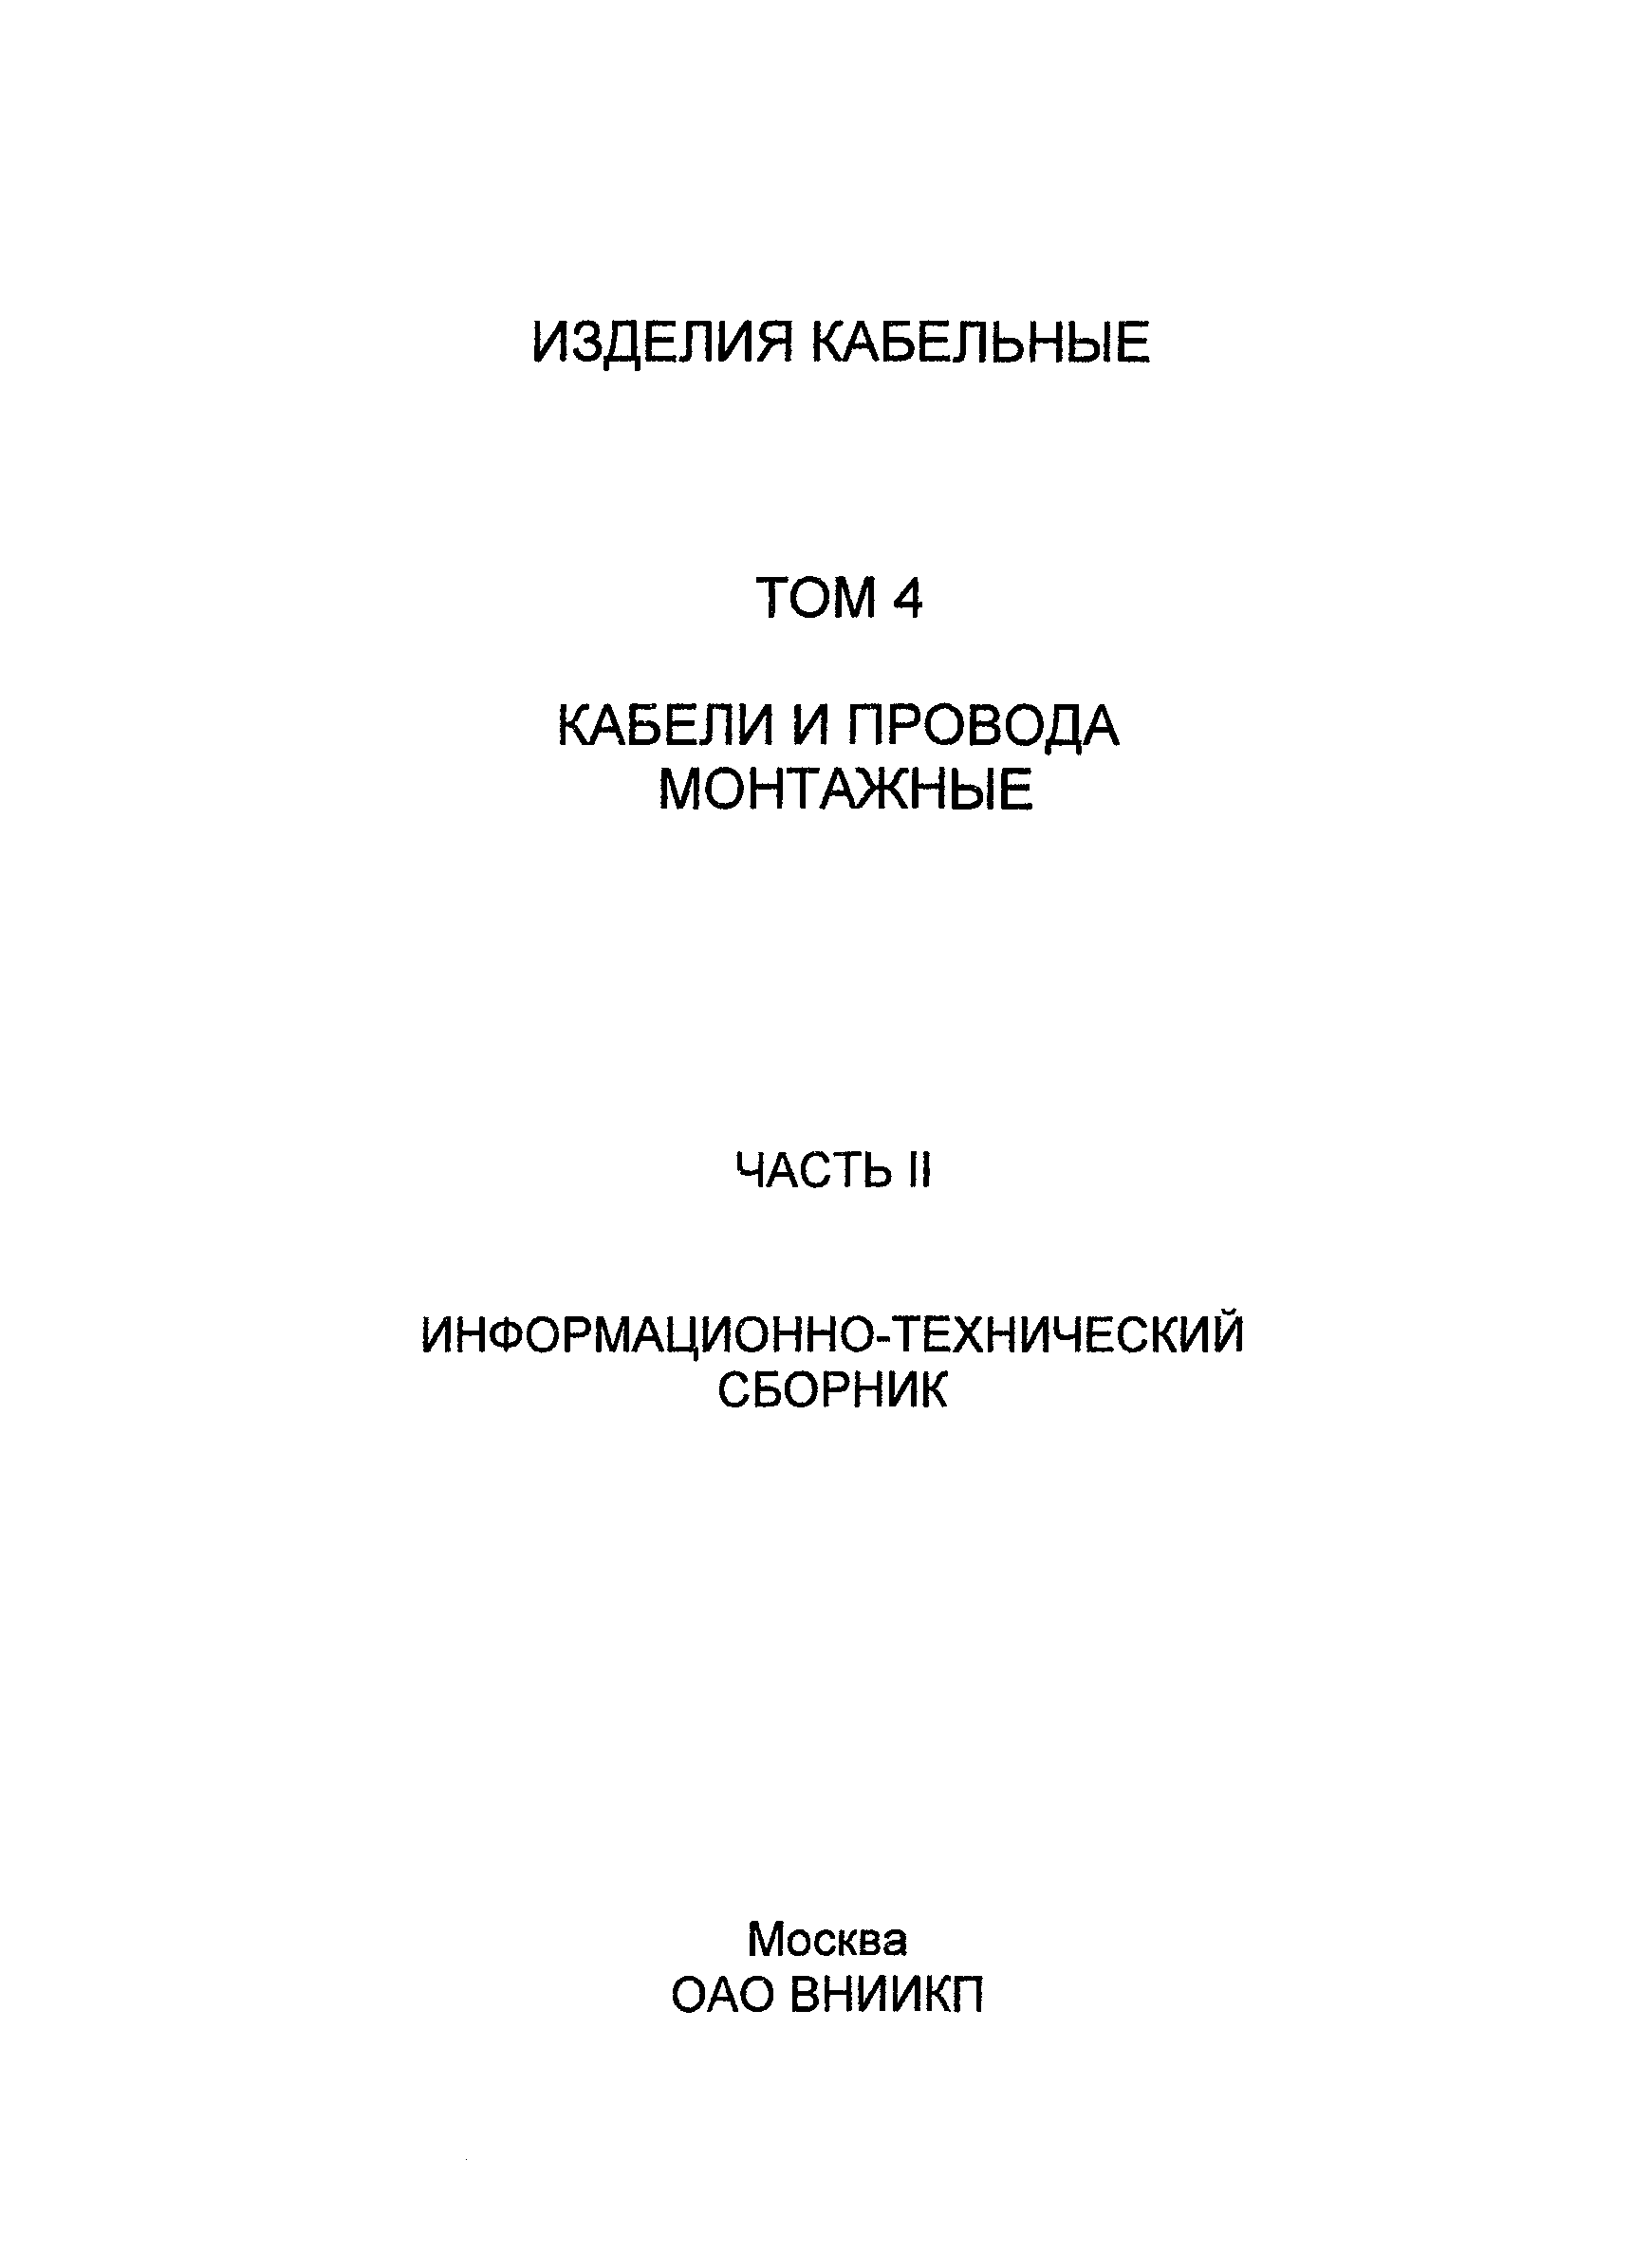 Информационно-технический сборник том 4